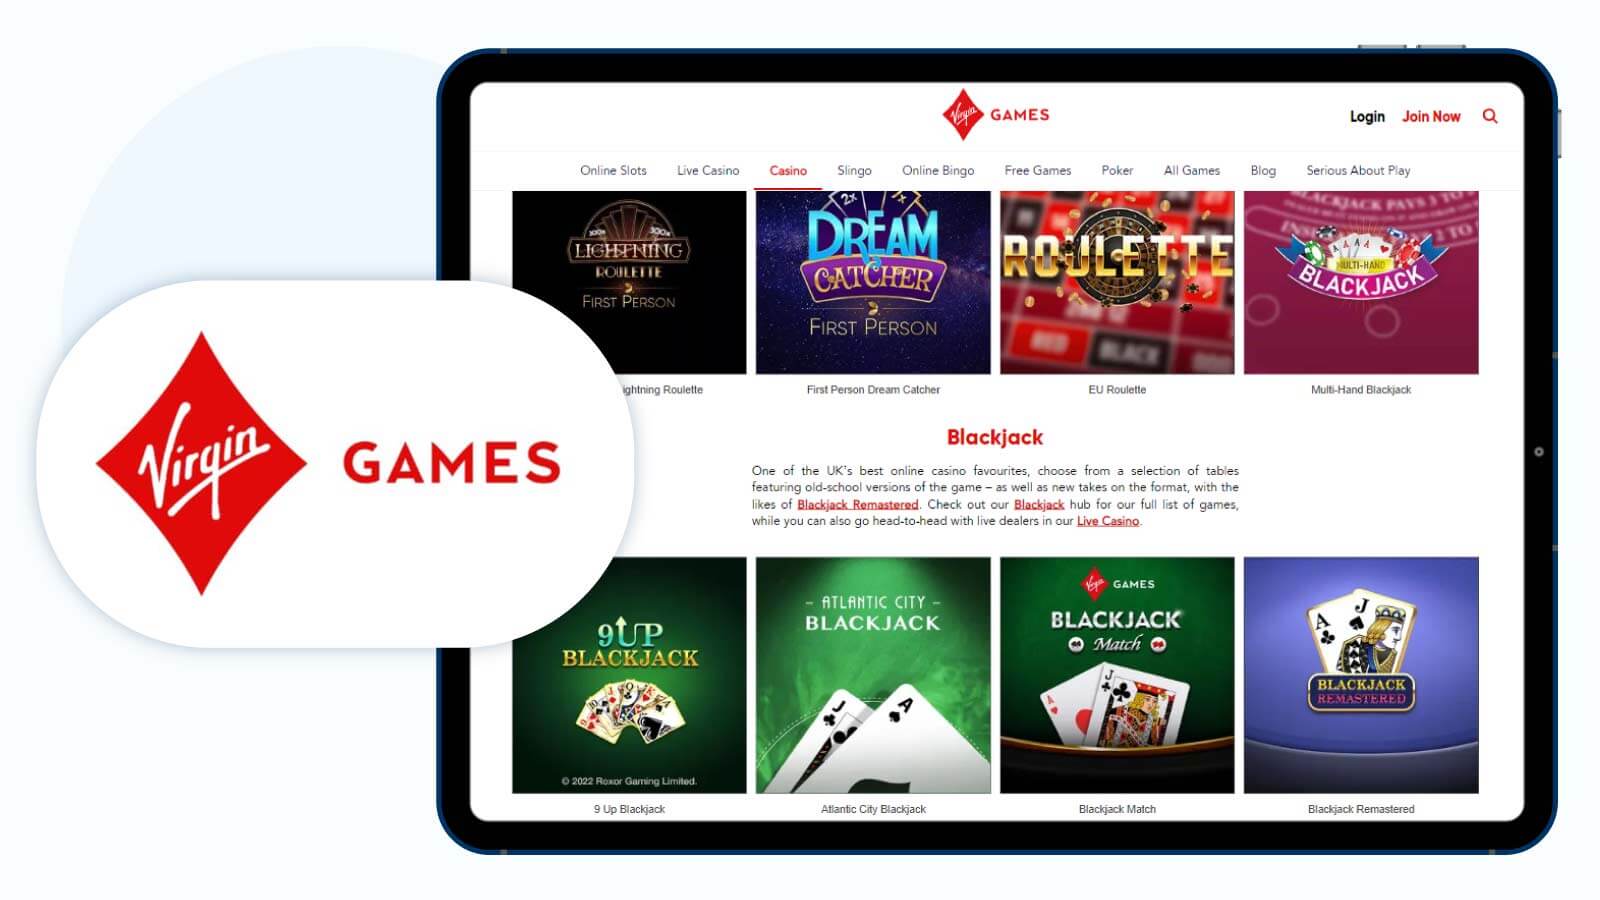 Virgin-Games-Best-Alternative-Neteller-Casino-UK